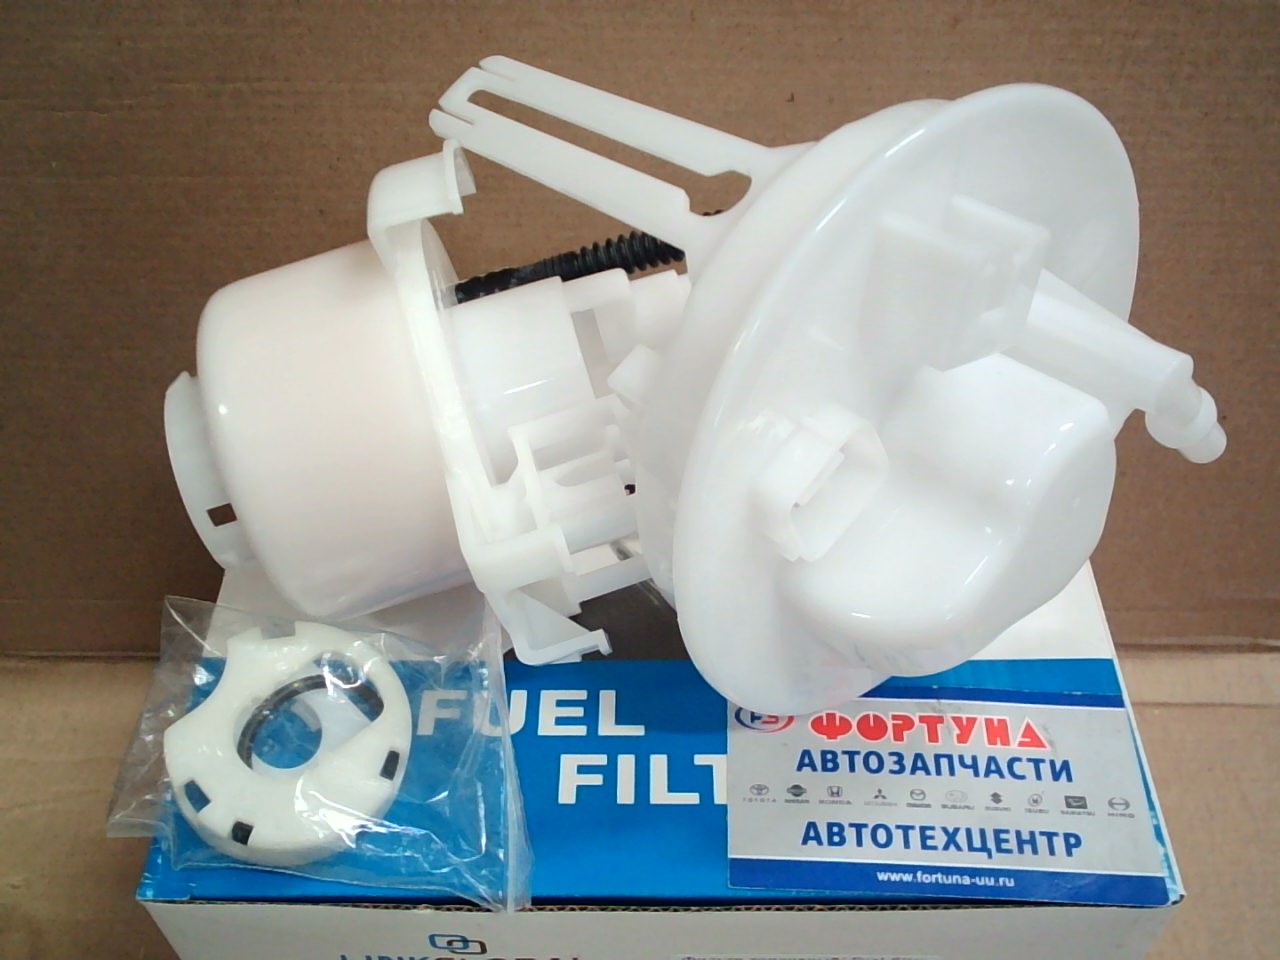 Фильтр Топливный в бак FS-2503 (FS2503L) LINKGLOBAL /Atenza, Mazda 6 '02-'08/ на  